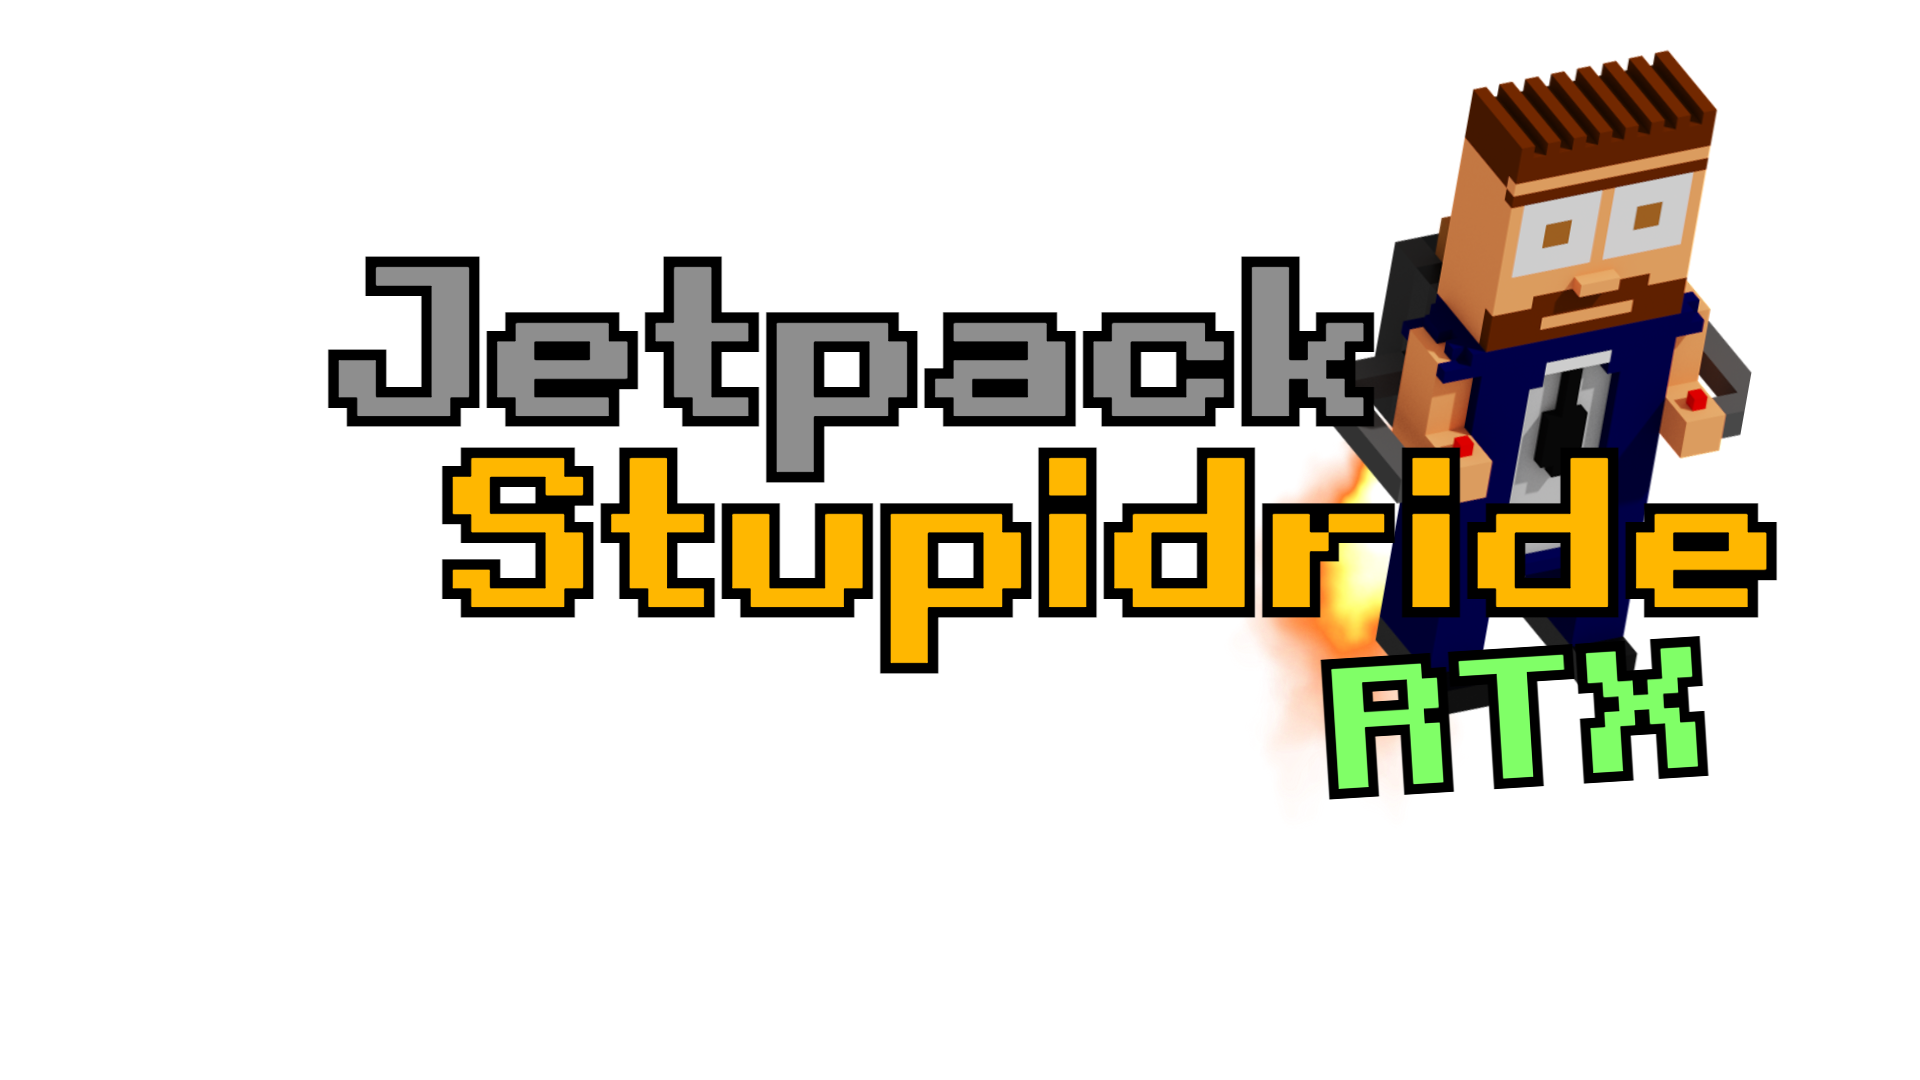 Jetpack Stupidride RTX